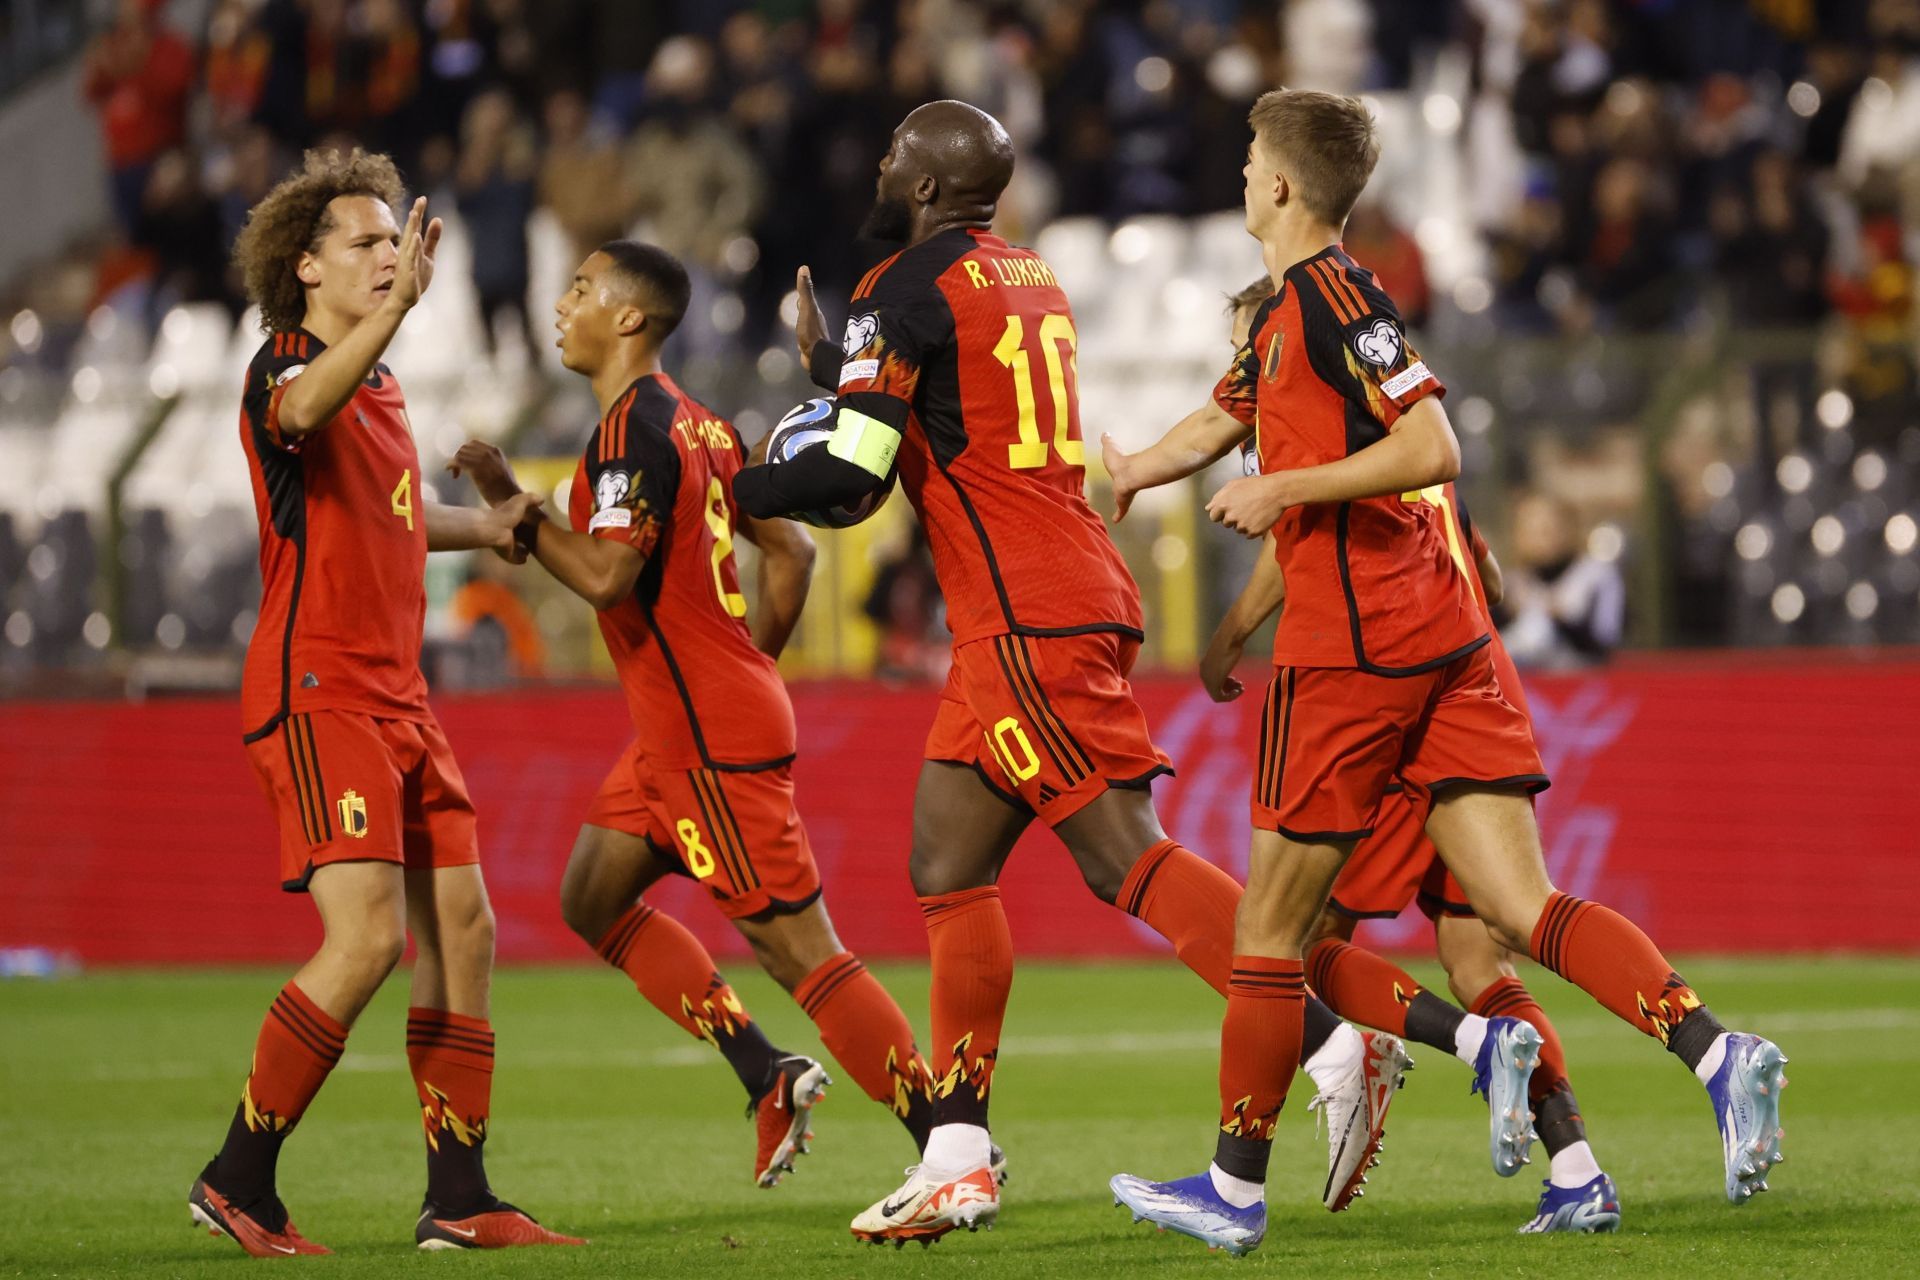 Belgium celebrate